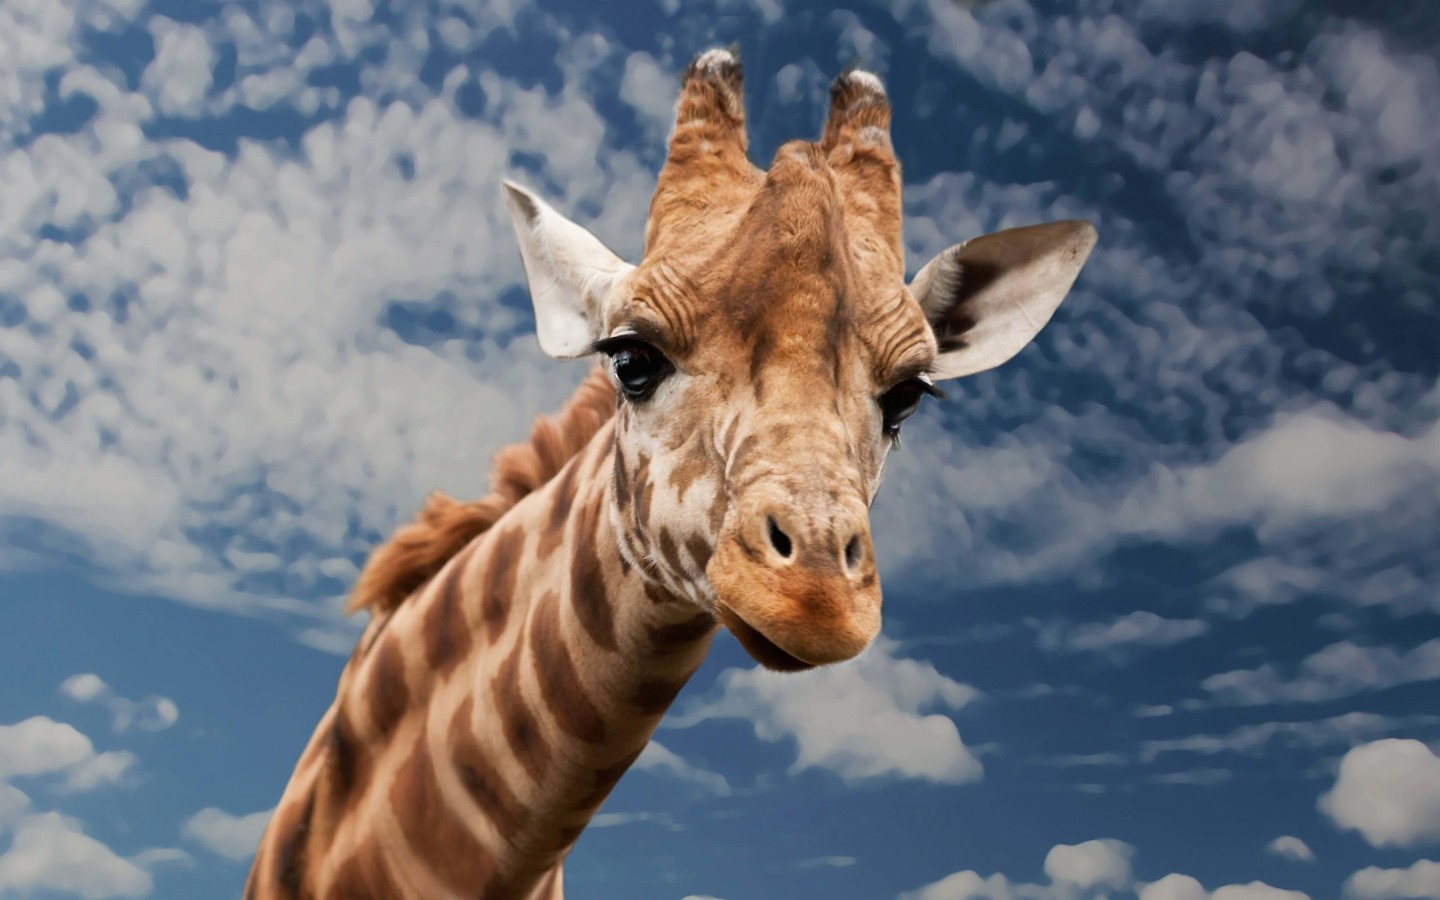 Funny Giraffe Wallpaper for Desktop 1440x900